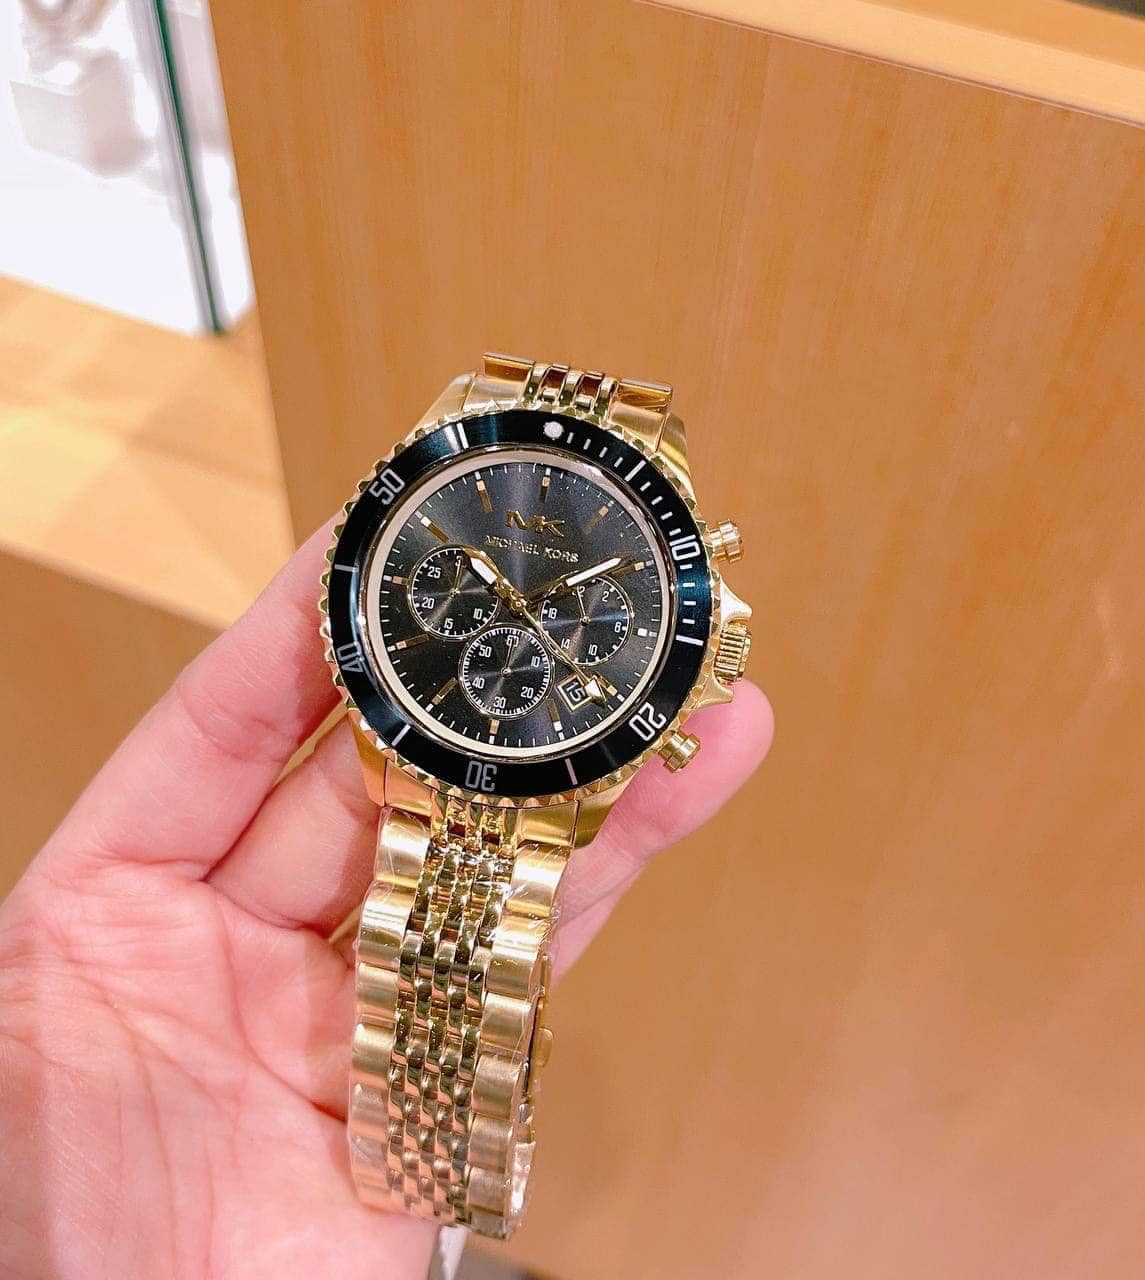 Đồng hồ Michael Kors thiết kế sang trọng và đẳng cấp. Đây là một trong những dịch vụ của shop khi giúp khách hàng sở hữu những sản phẩm xa xỉ. 